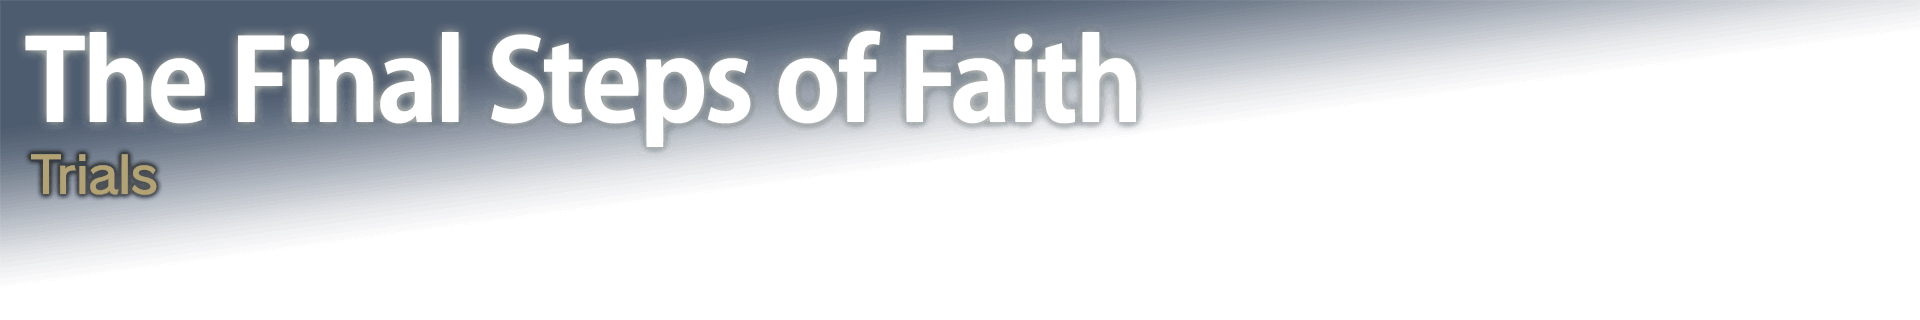 The Final Steps of Faith